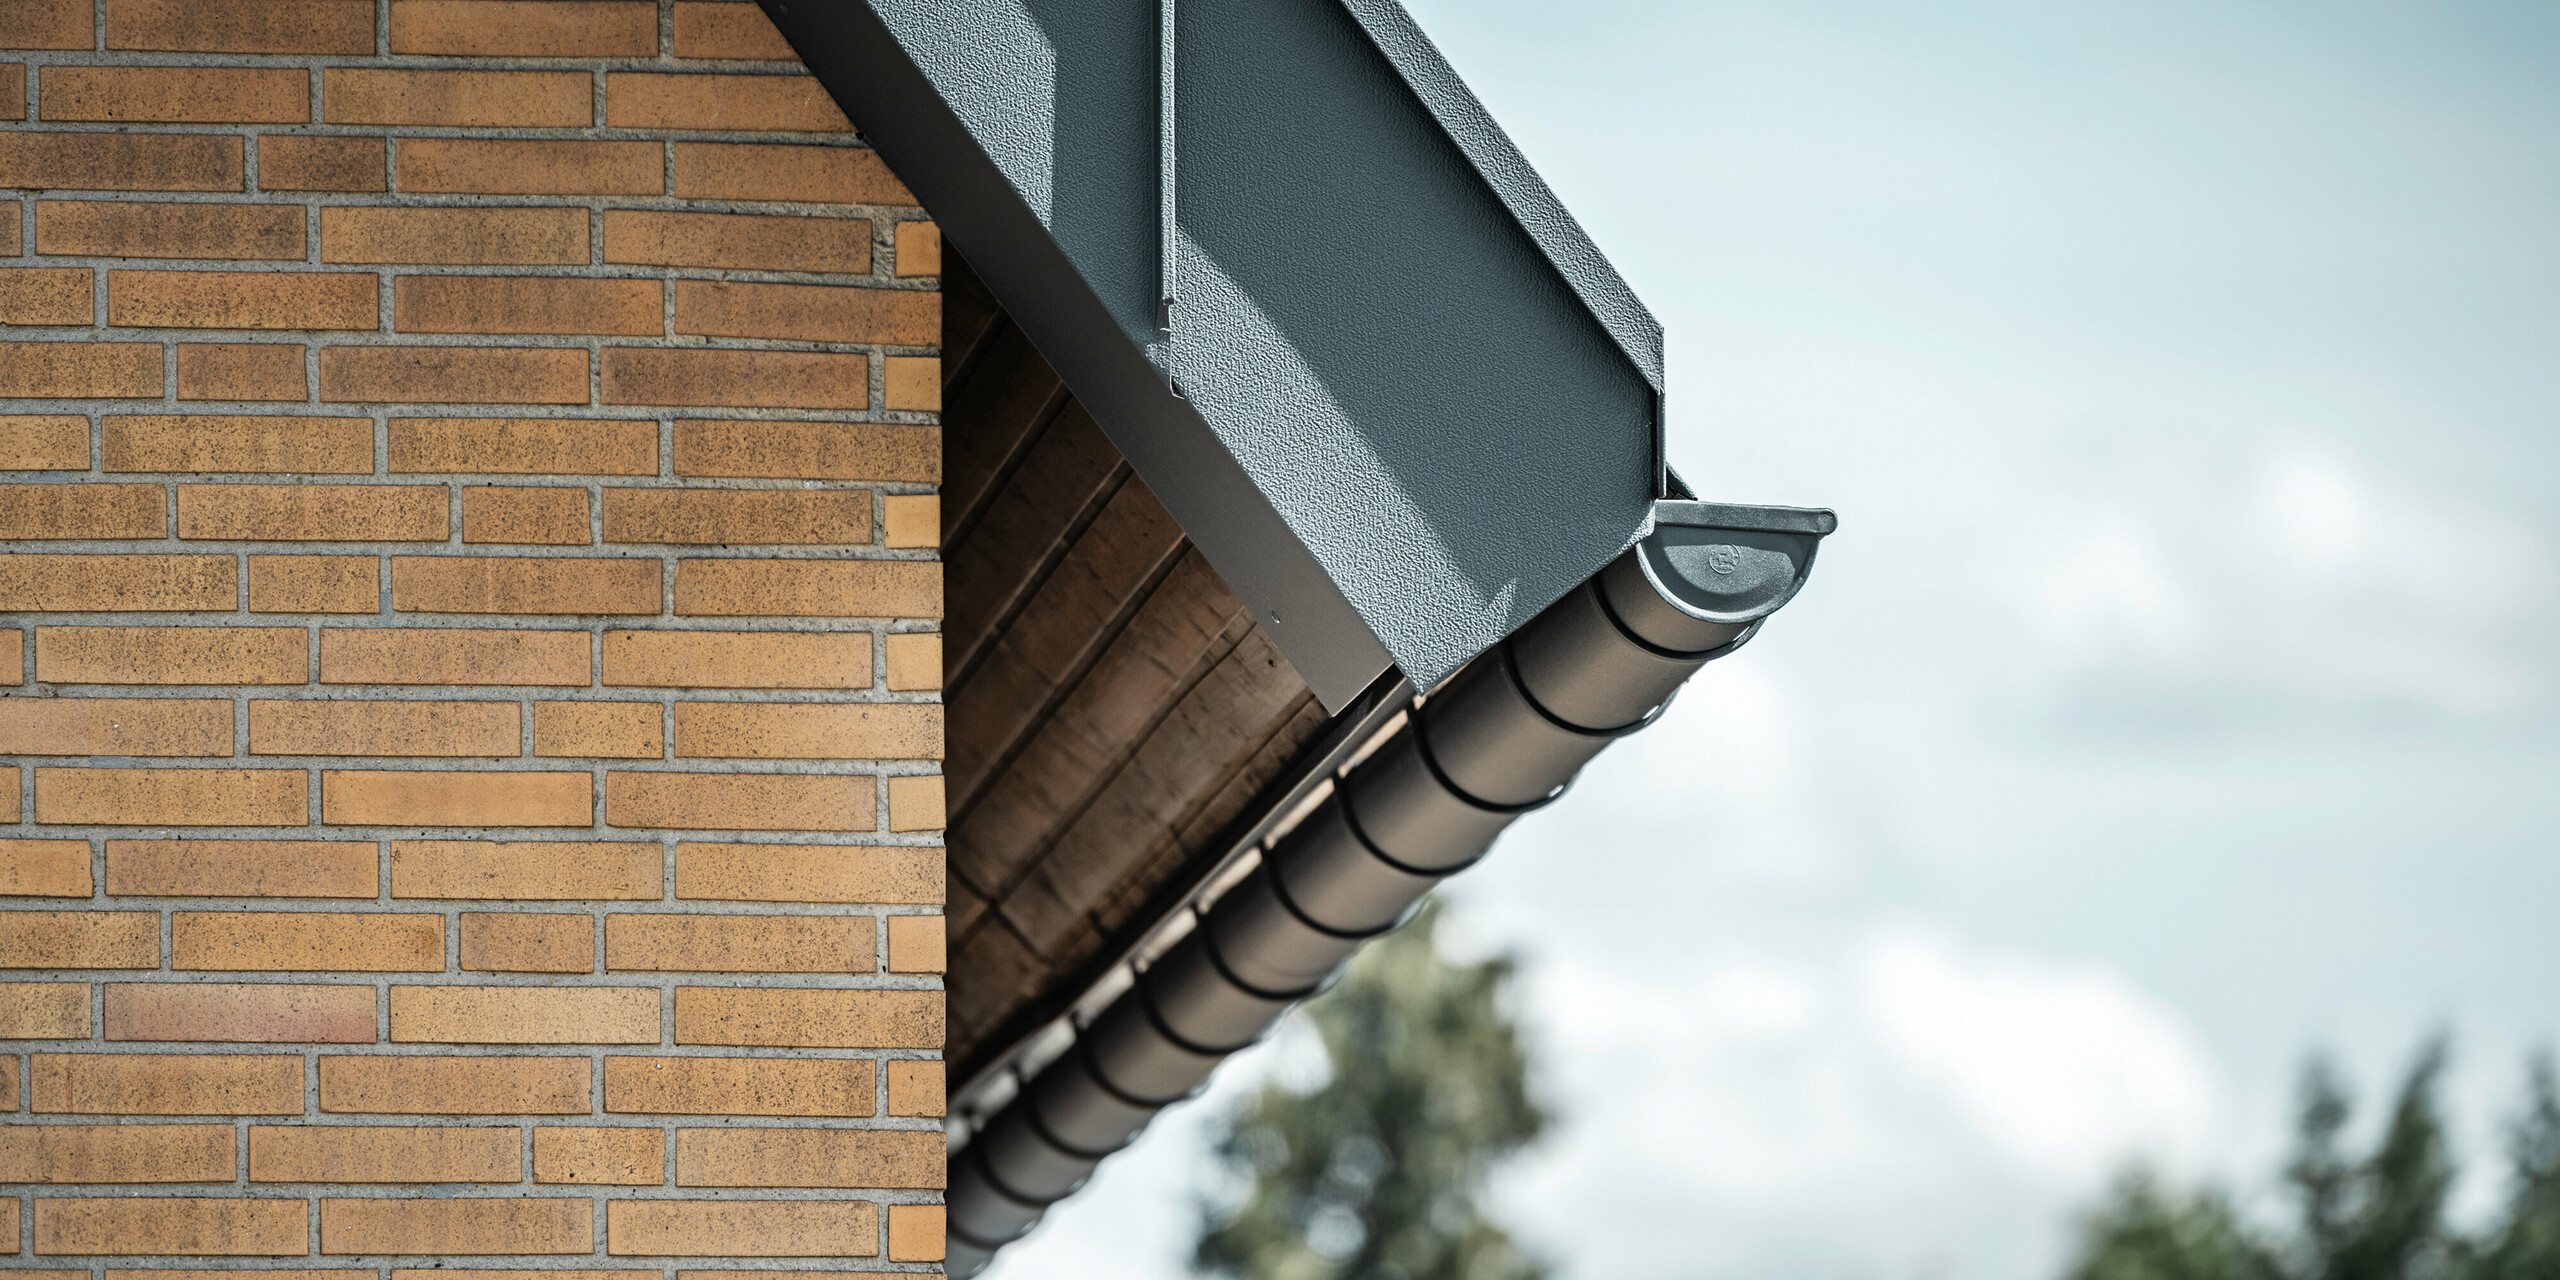 Detailaufnahme eines anthrazitfarbenen Dachentwässerungsystems von PREFA. Die Hängerinne hebt sich deutlich von den warmen Tönen der Backsteinwand ab und betont die präzise Verarbeitung und Qualität der verwendeten Materialien.